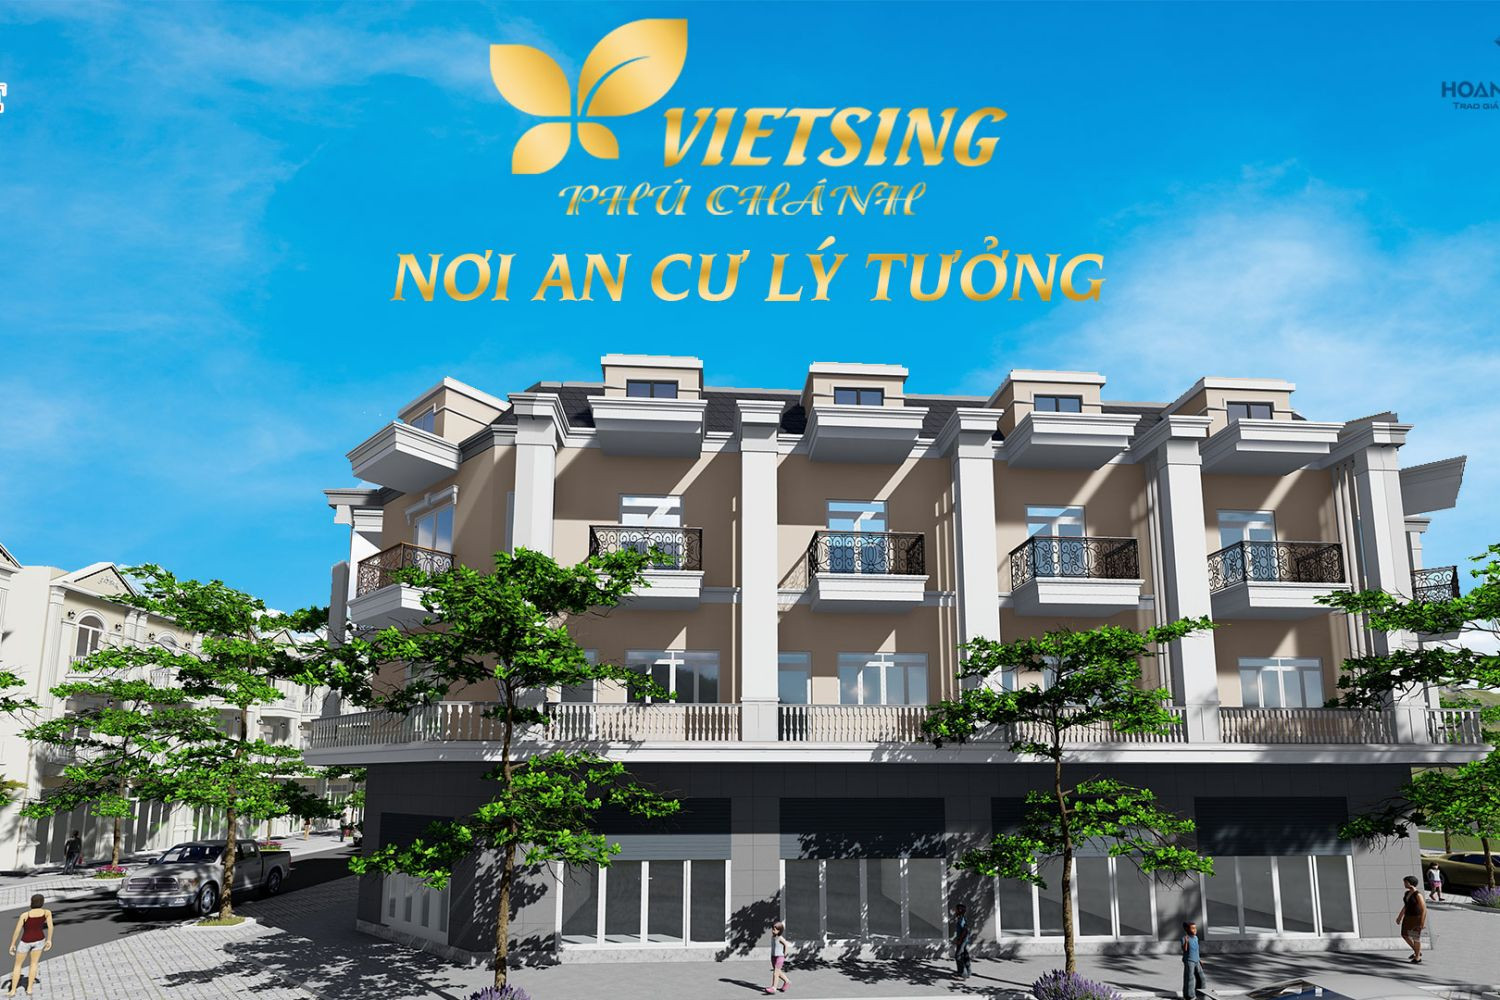 Khu nhà ở VietSing - Phú Chánh 1